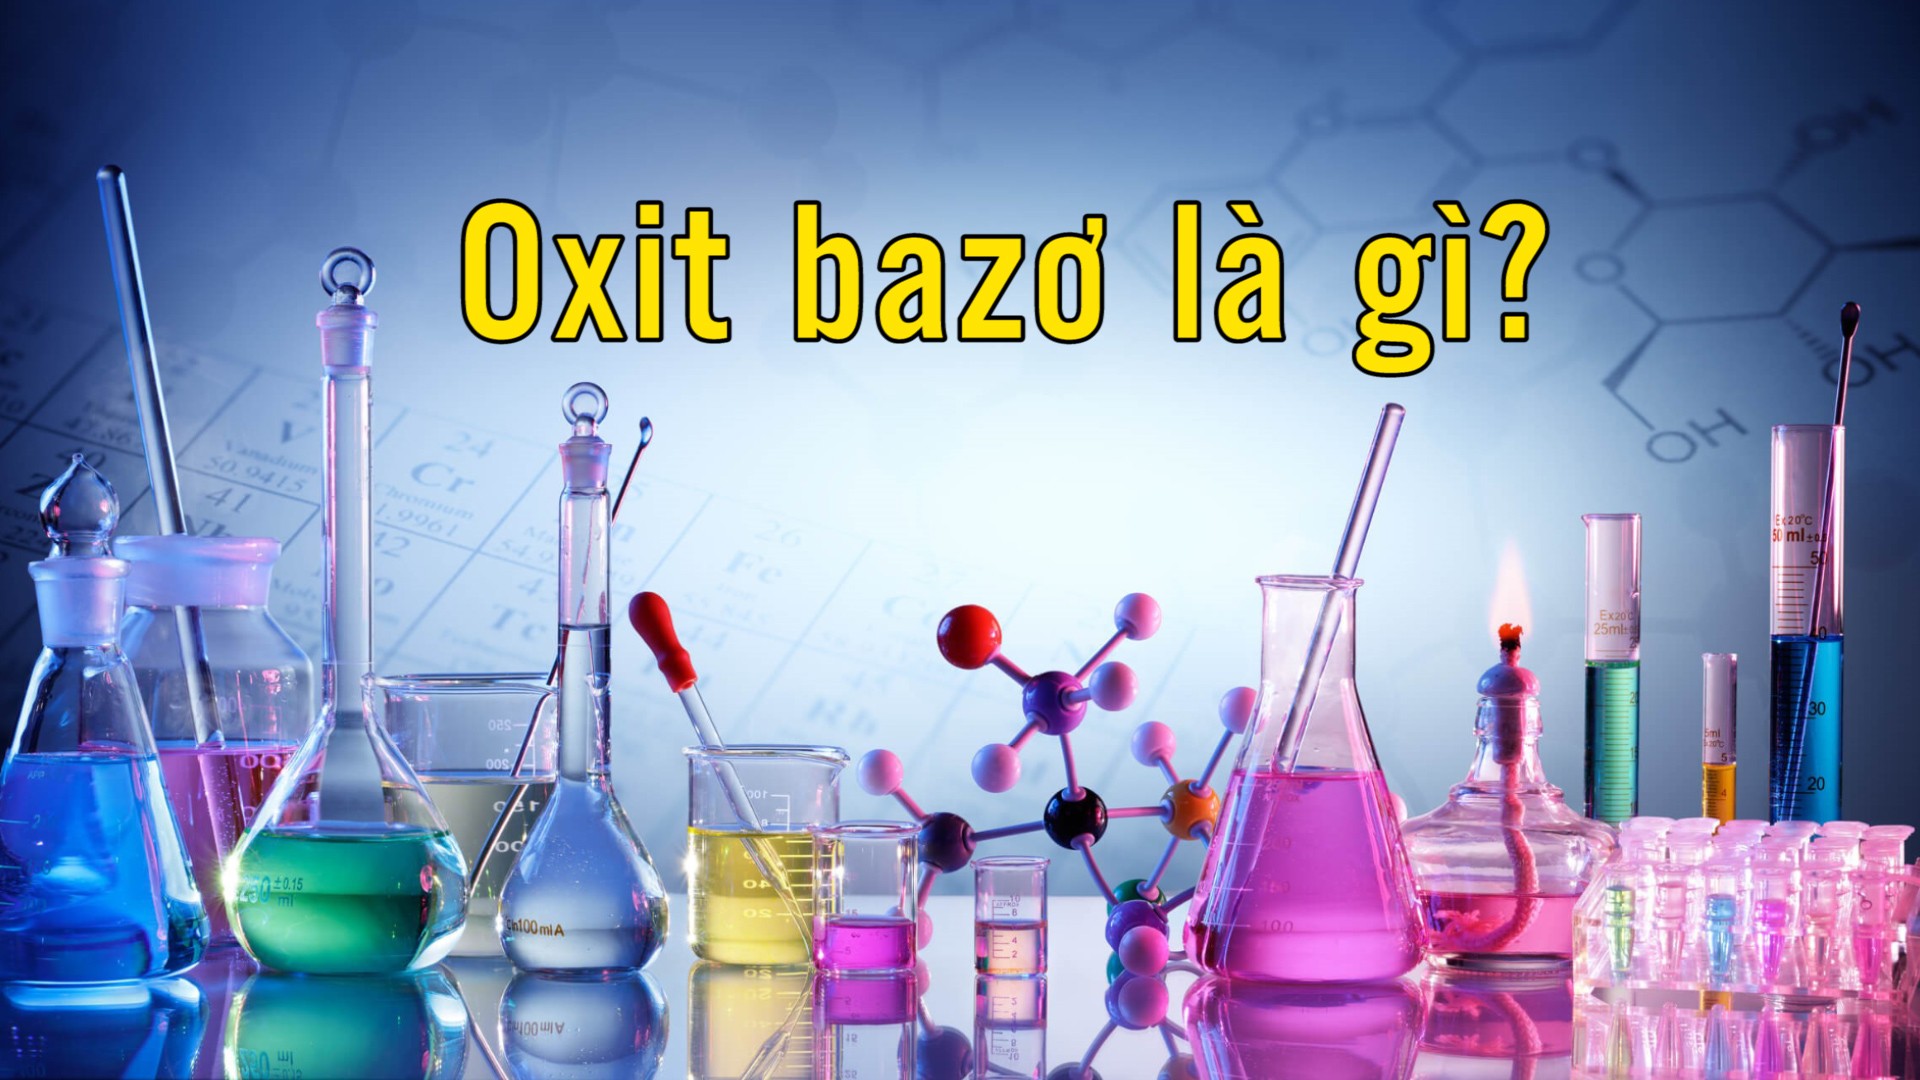 Tổng quan về oxit bazo là những chất nào và tính chất của chúng